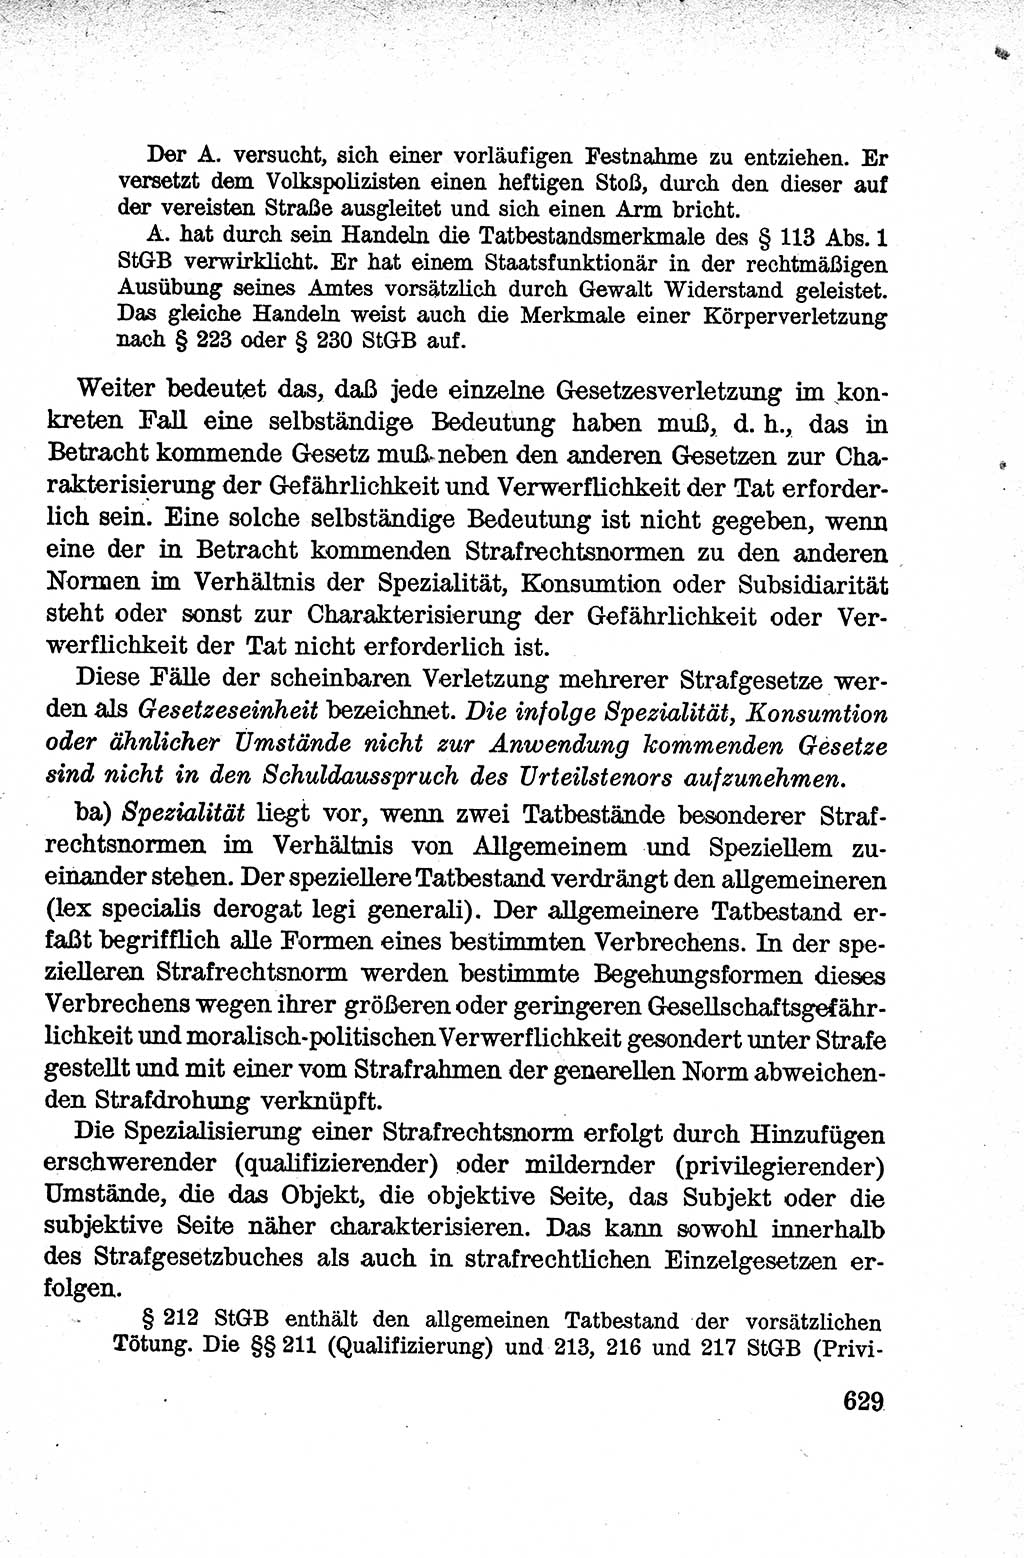 Lehrbuch des Strafrechts der Deutschen Demokratischen Republik (DDR), Allgemeiner Teil 1959, Seite 629 (Lb. Strafr. DDR AT 1959, S. 629)